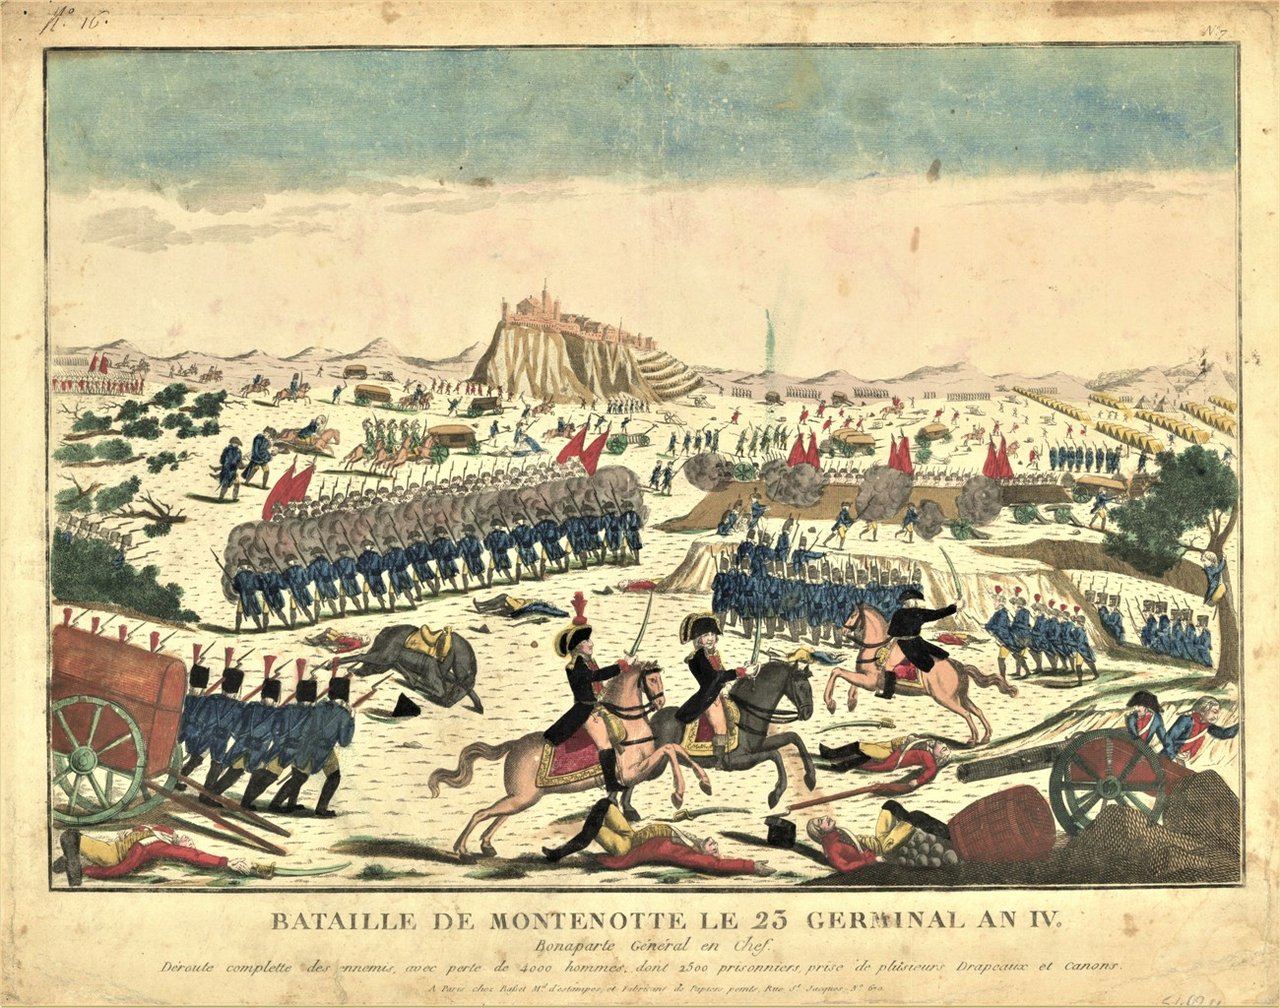 Bataille de Montenotte le 23 germinal an IV